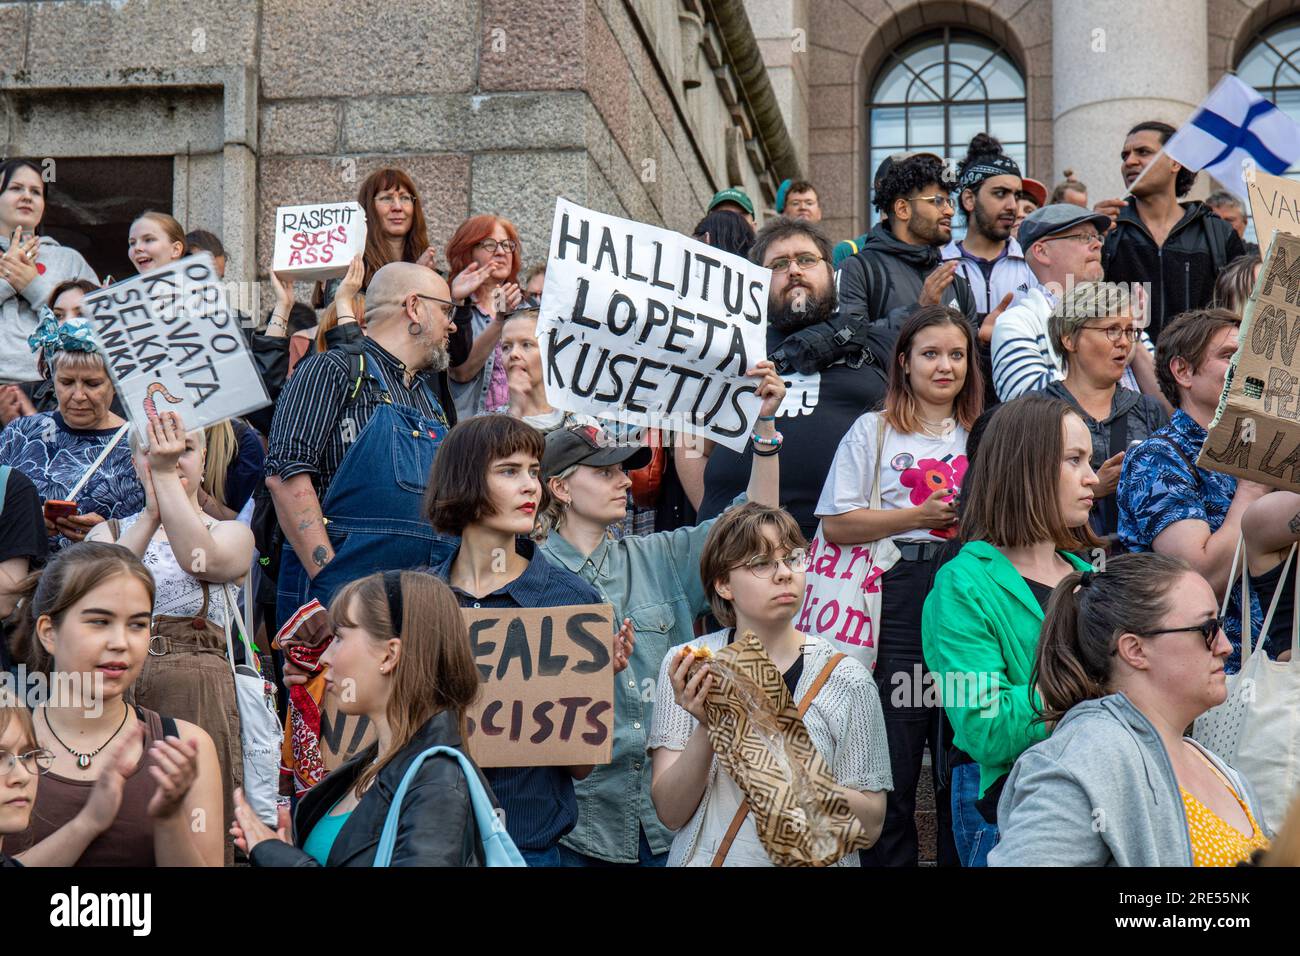 Manifestanti con cartelli fatti a mano sui gradini del Parlamento a Nollatoleranssi! Manifestazione Rasistit ulos hallituksesta a Helsinki, Finlandia Foto Stock